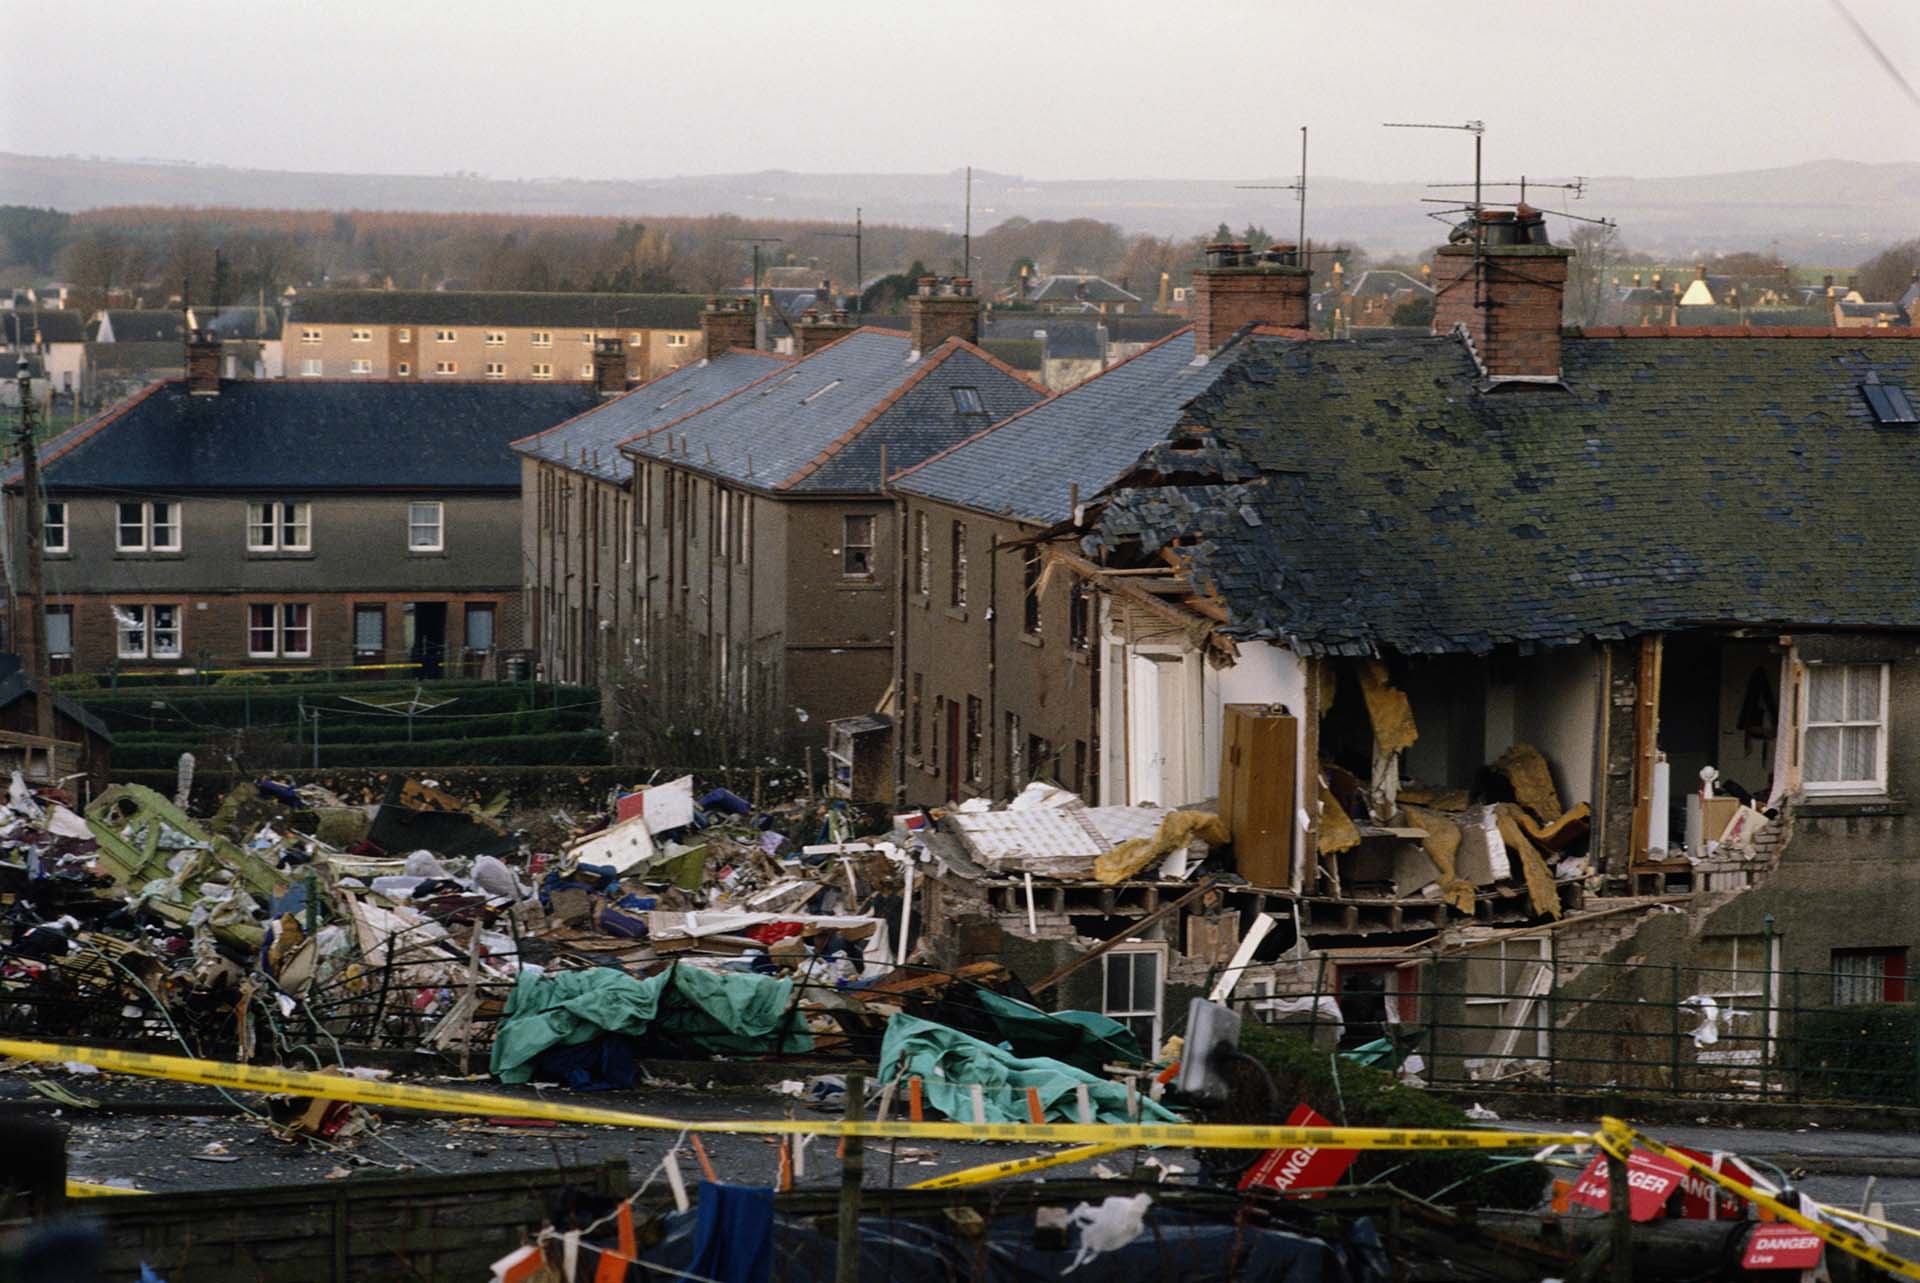 Casas en ruinas en la ciudad de Lockerbie. El atentado fue llevado a cabo por Libia. El gobierno de Kadaffi reconoció el hecho años después (Photo by Tom Stoddart/Getty Images)